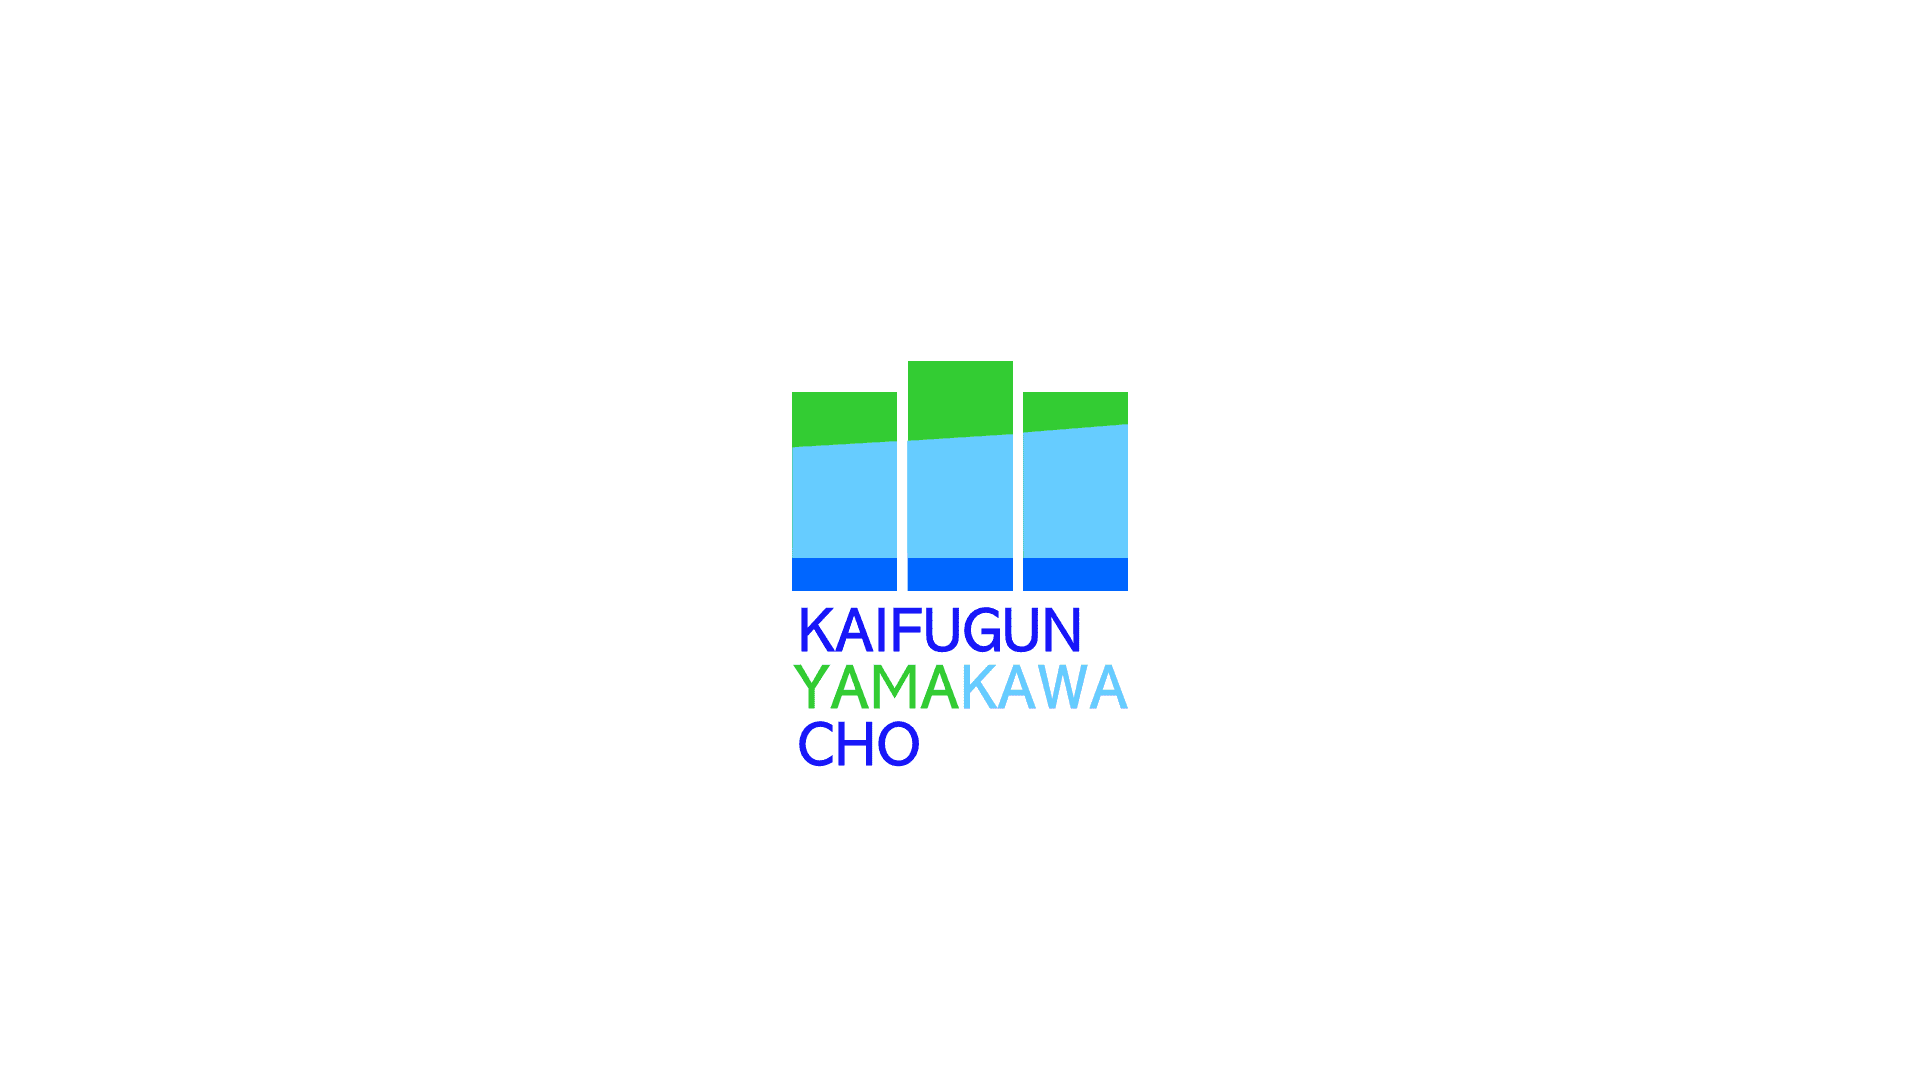 KAIFUGUNYAMAKAWACHO